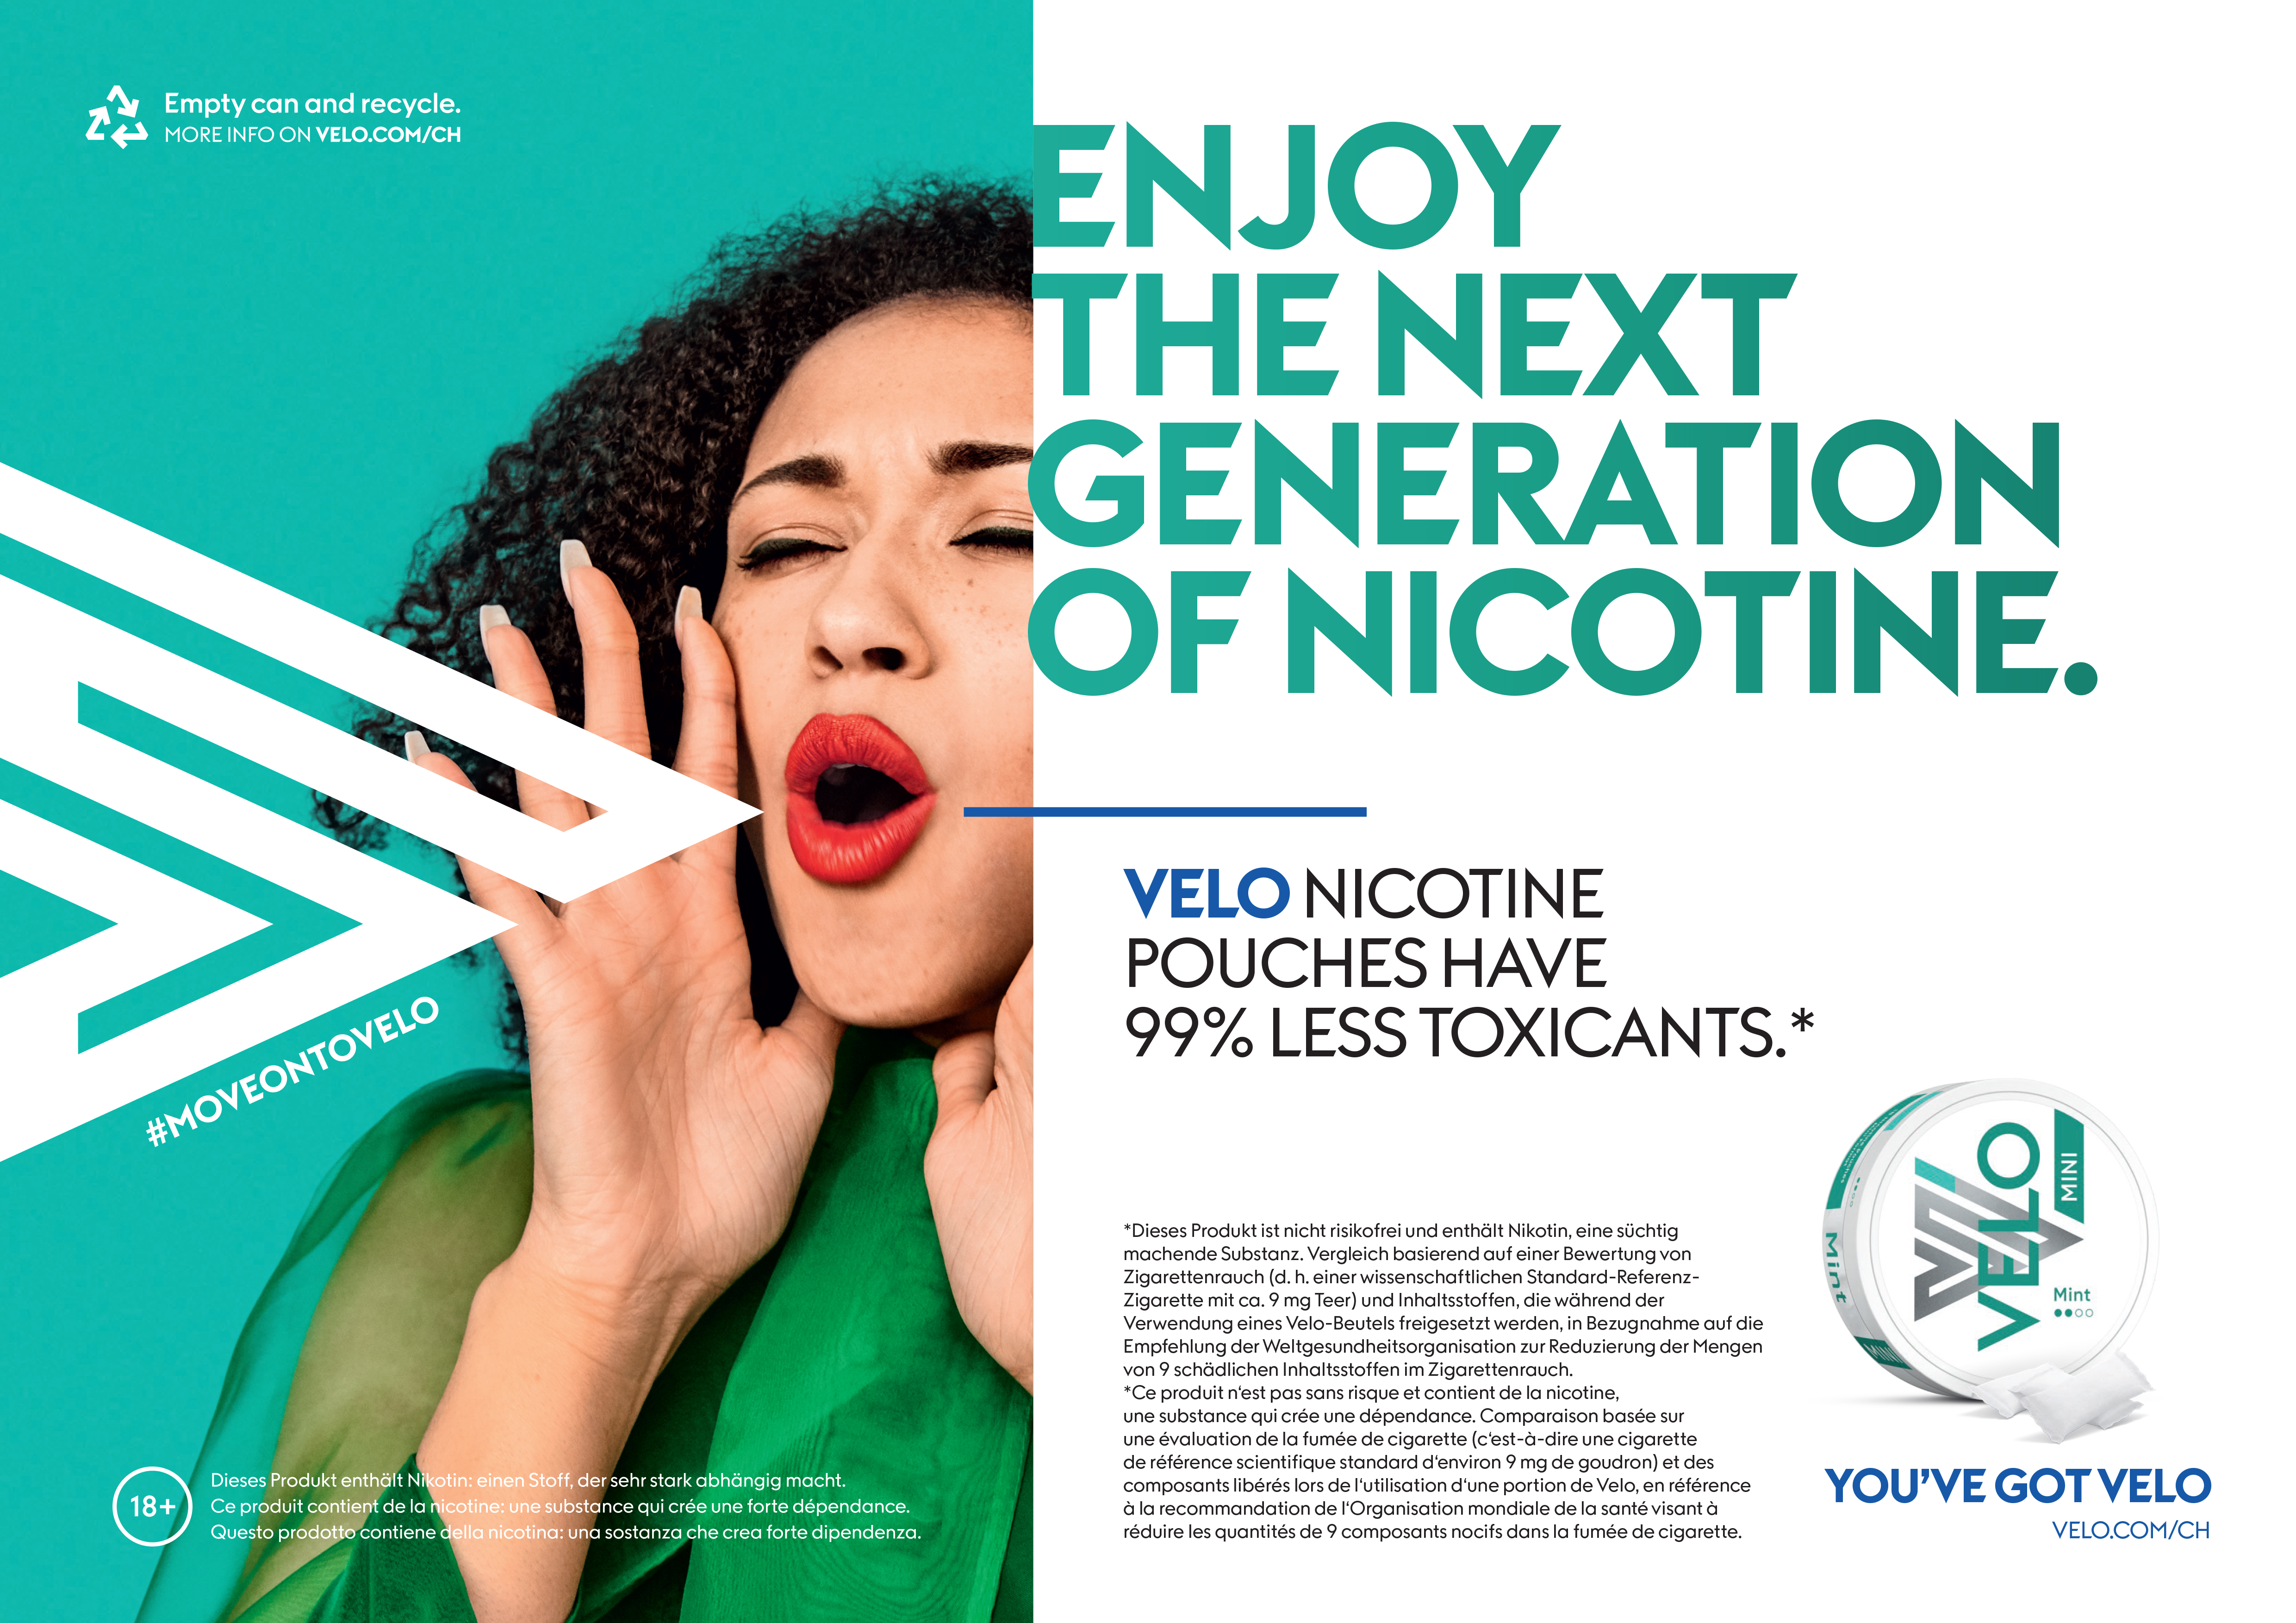 Les sachets de nicotine Velo ont 99% de toxicité en moins.